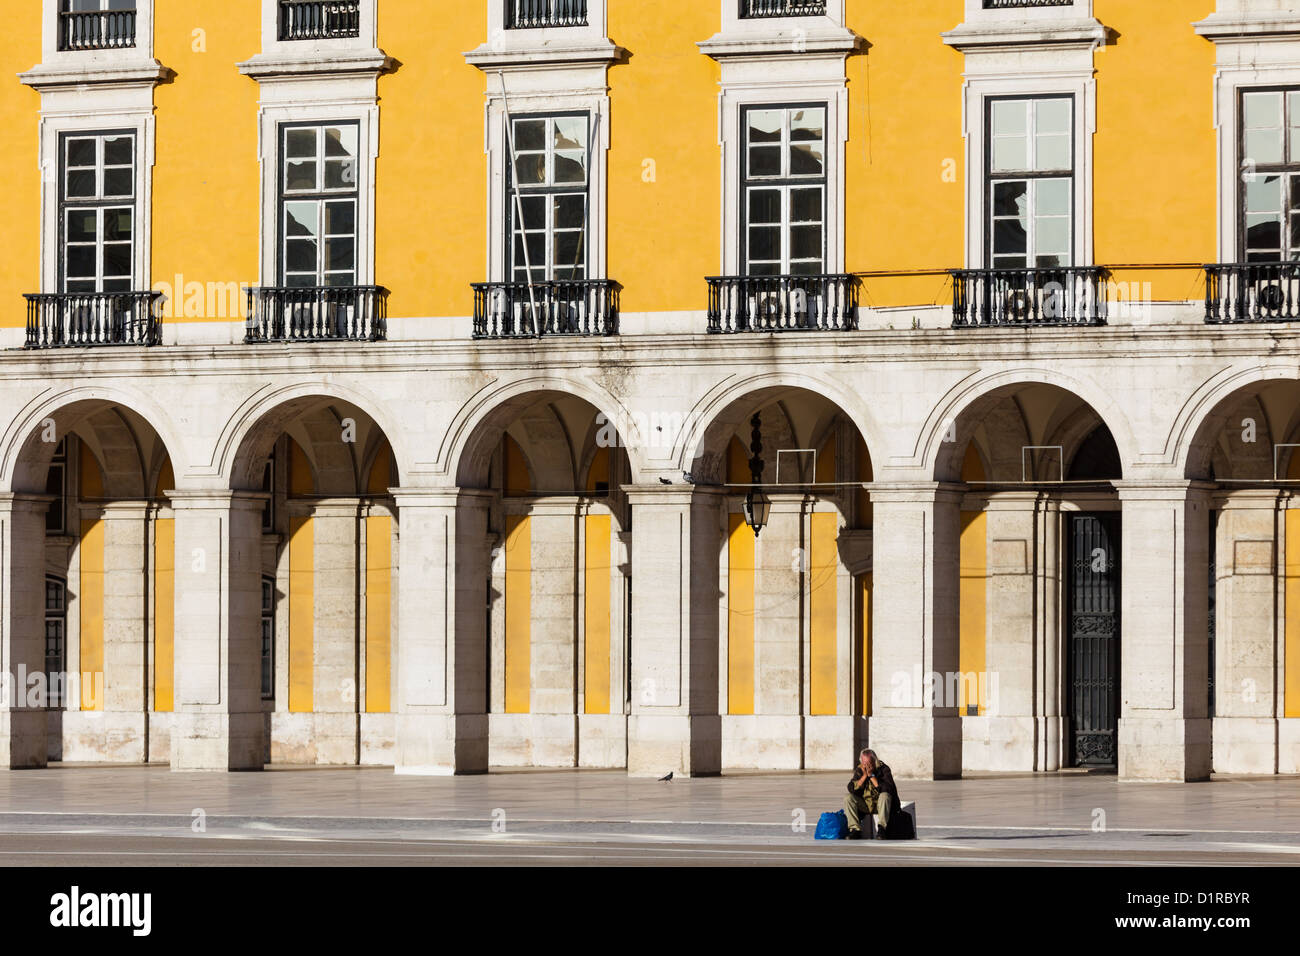 Magnífica arquitectura de estilo manuelino de los edificios del palacio real que rodean la Praca do Comercio, la plaza pública más grande de Portugal llamada la puerta de entrada a Lisboa Foto de stock